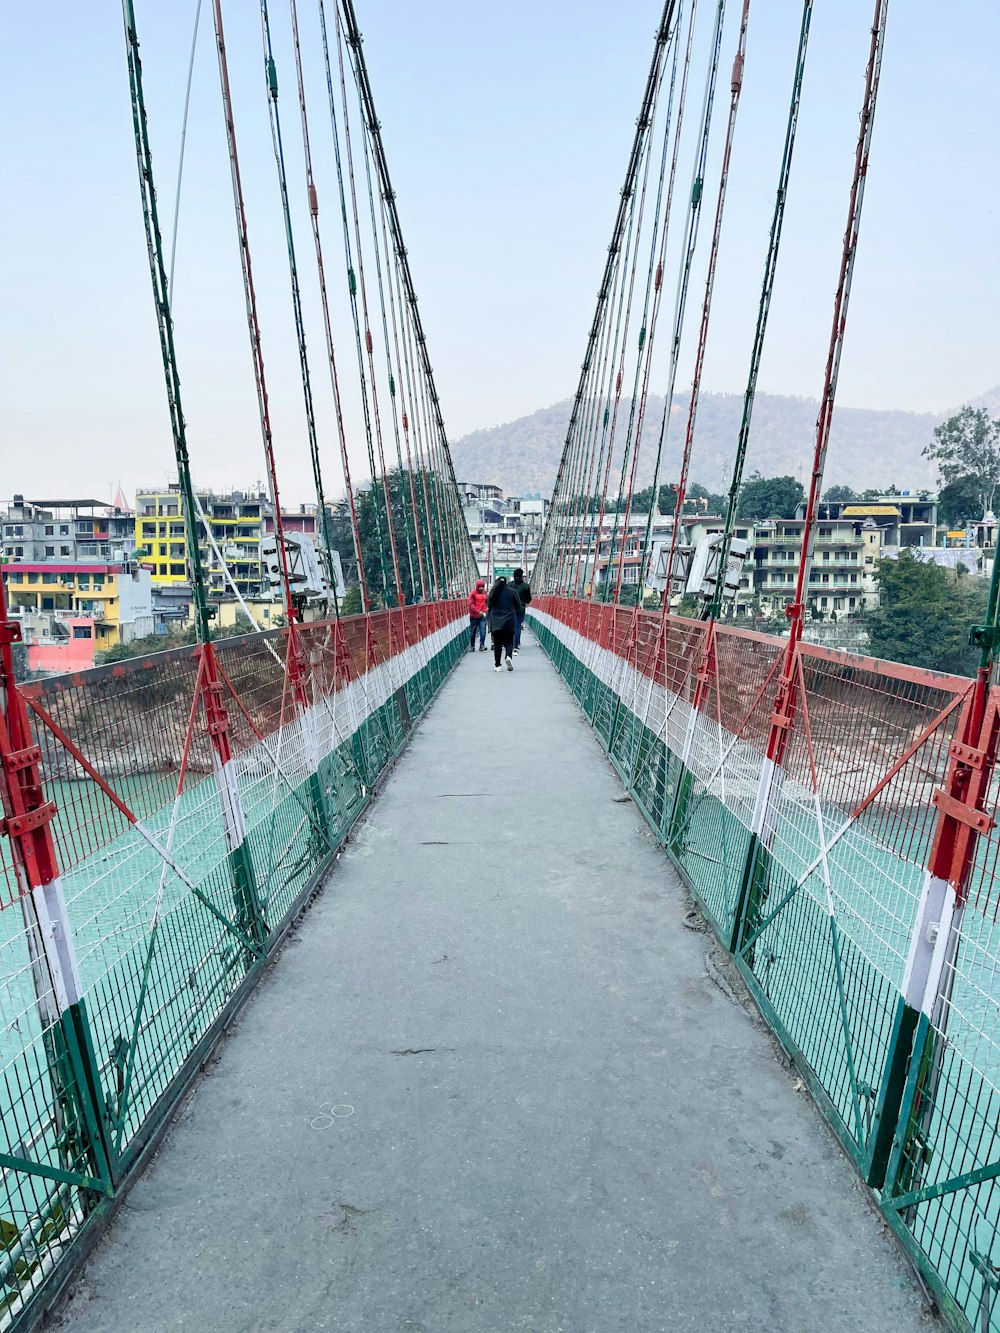 personne en veste noire marchant sur un pont en métal rouge pendant la journée